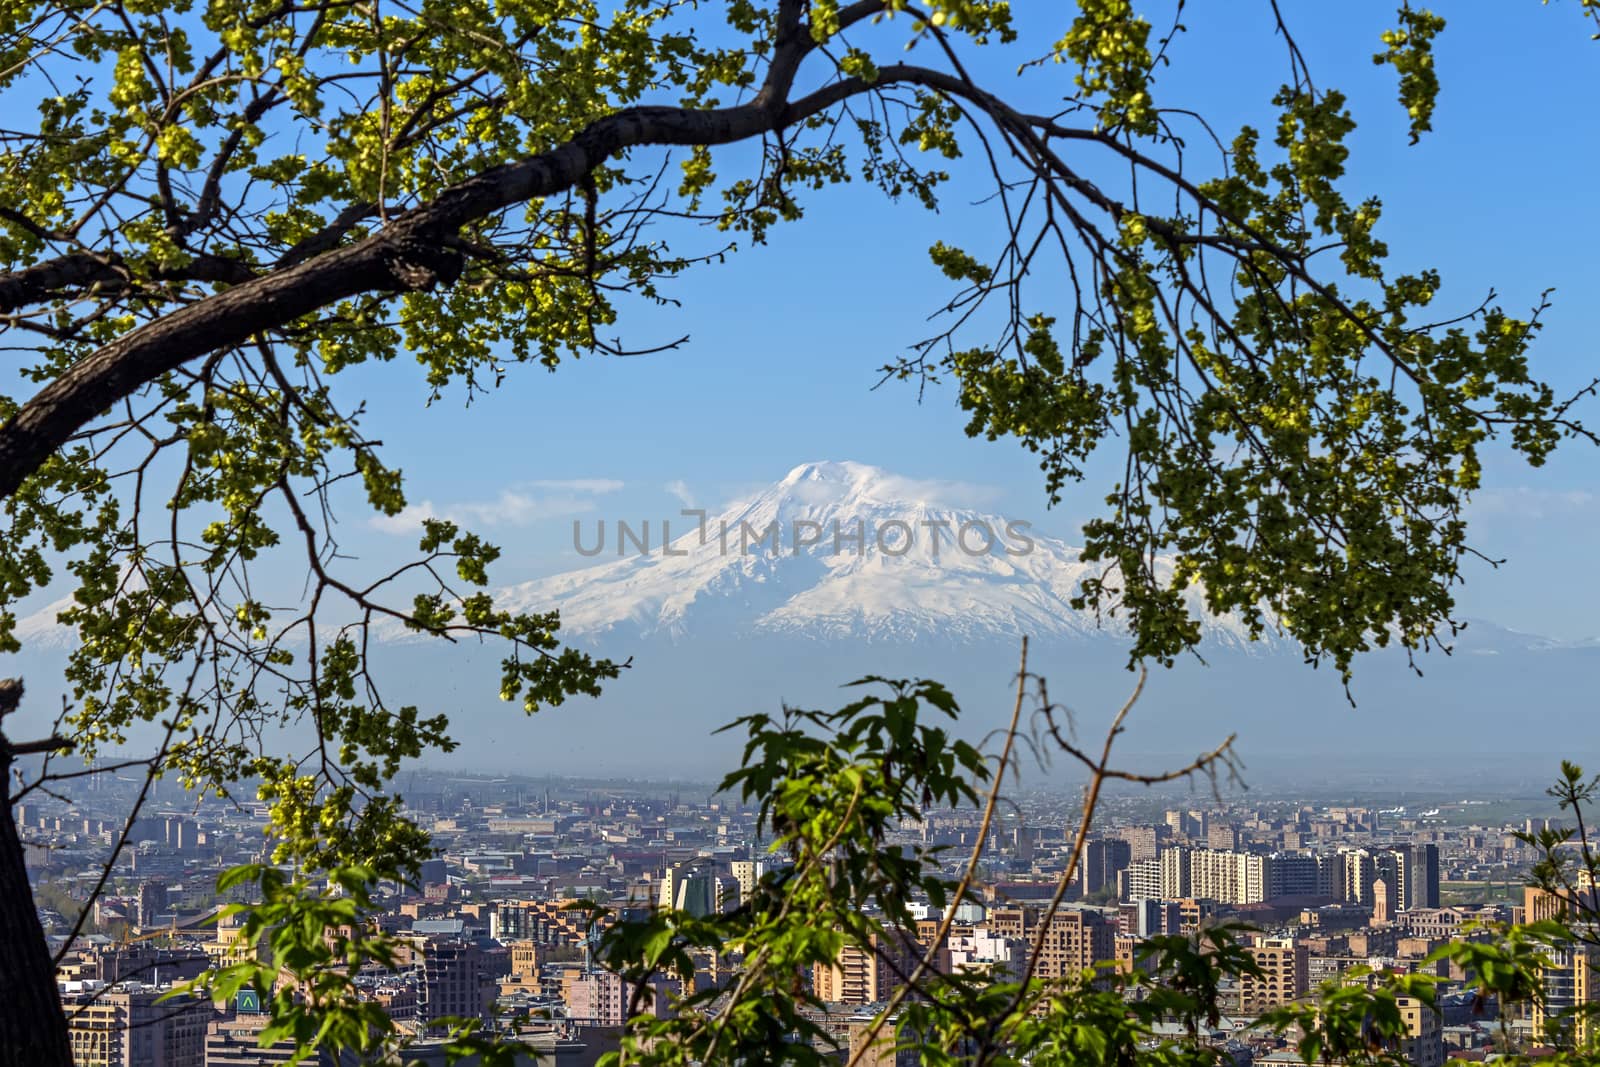 Mount Ararat and Yerevan city.